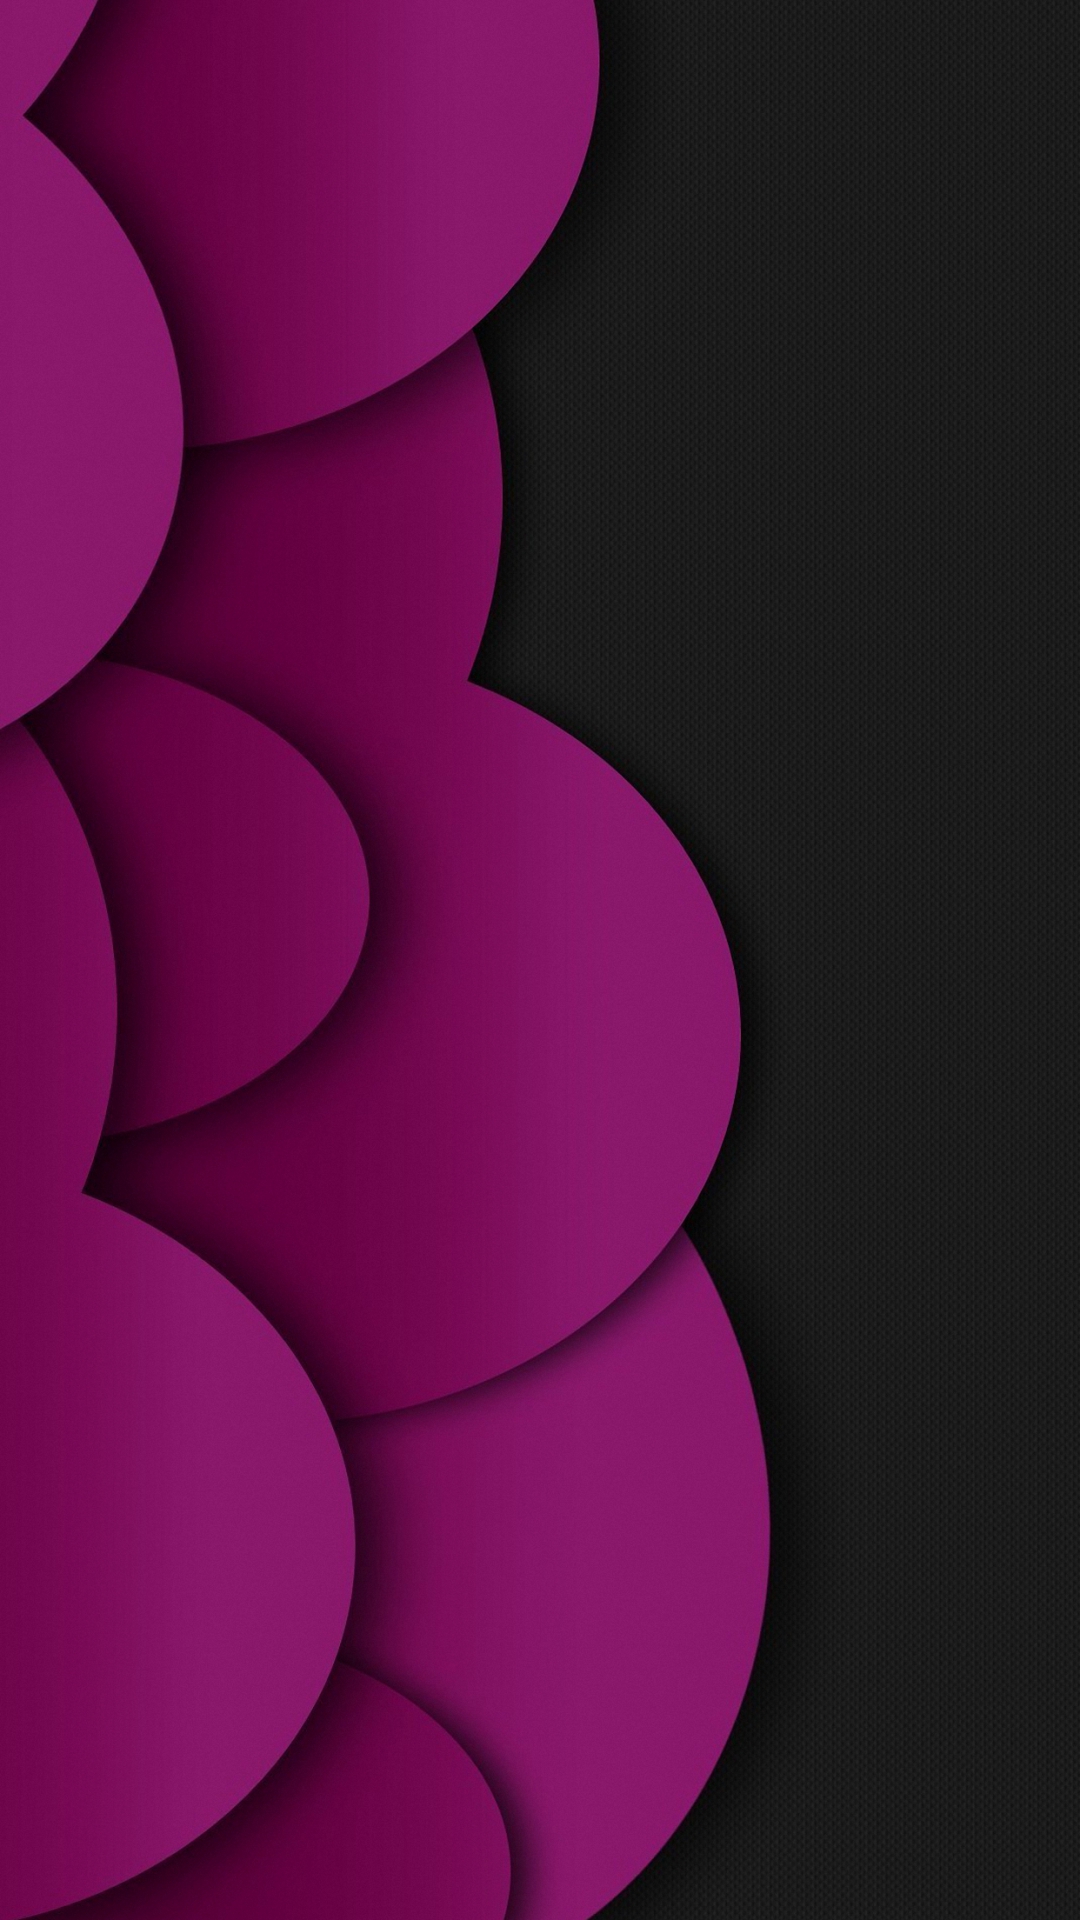 Cool Purple iPhone Wallpapers - WallpaperSafari